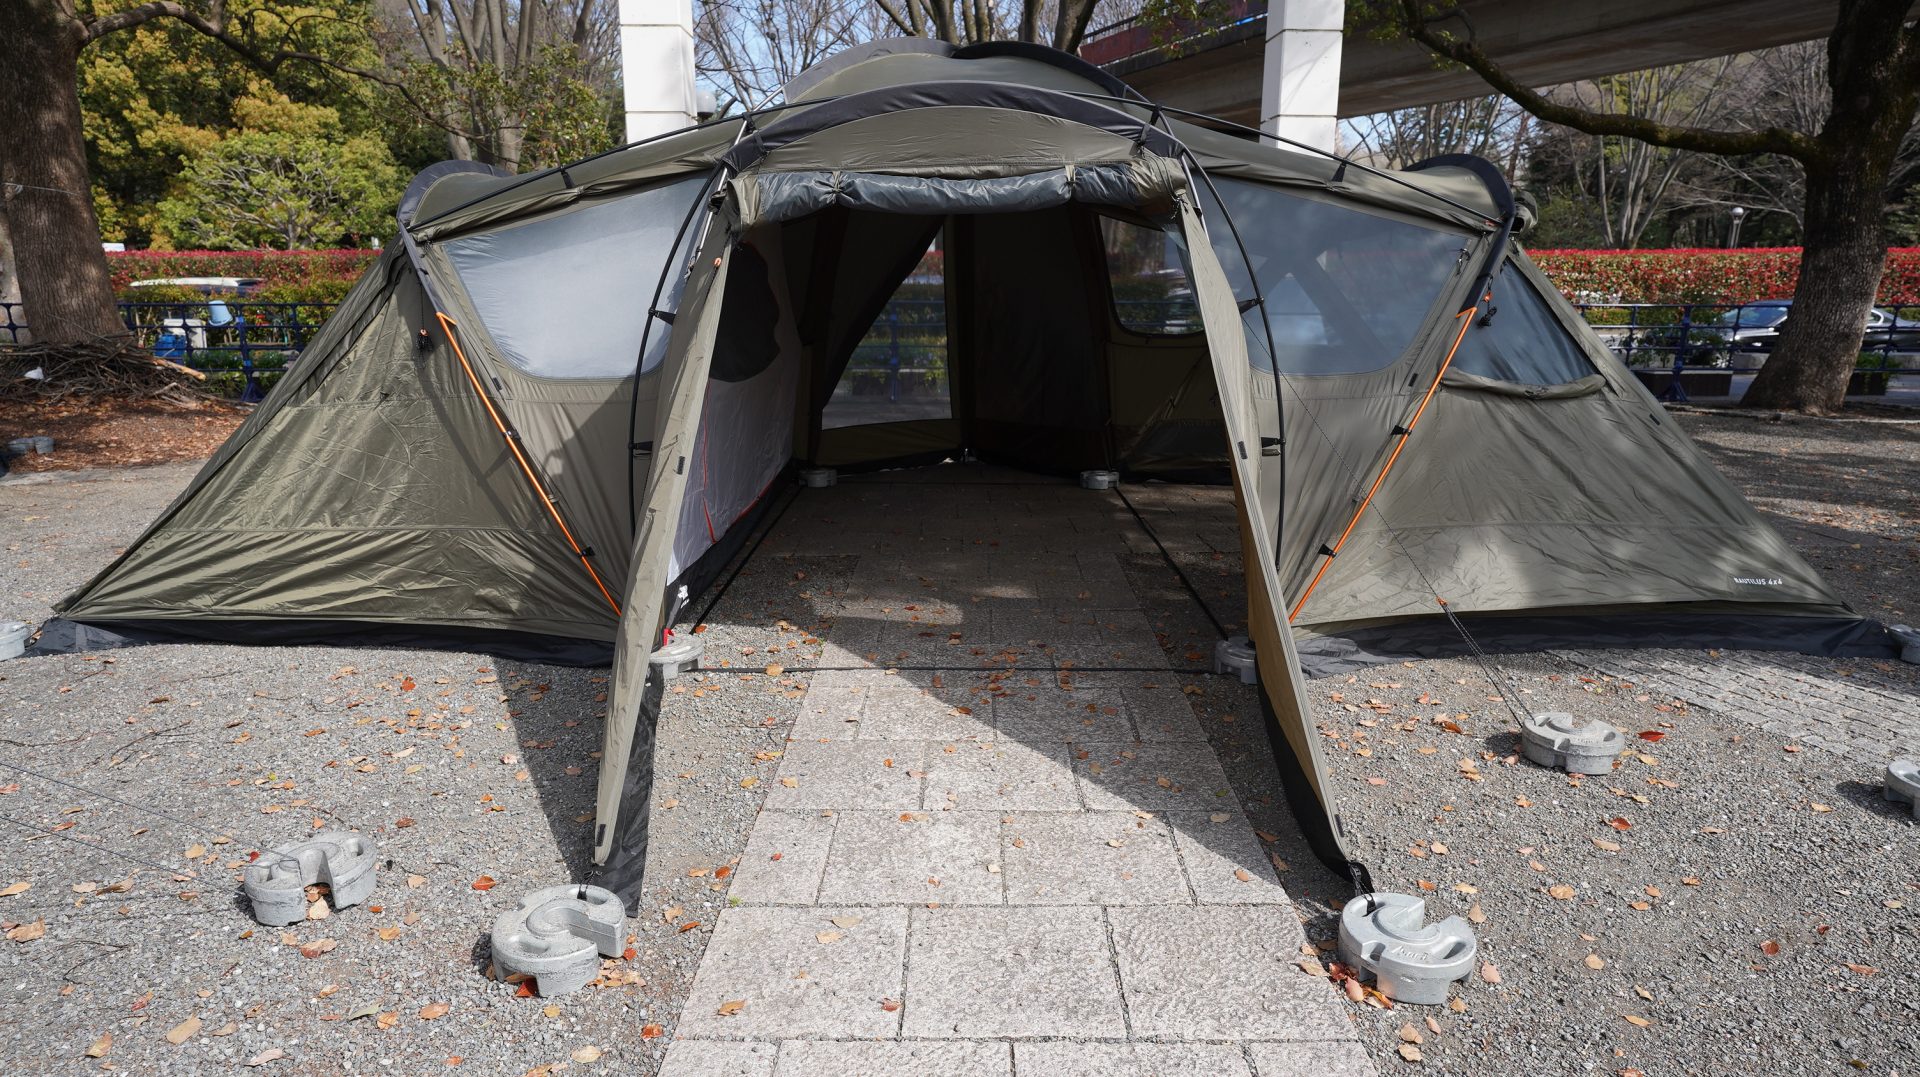 ザ・ノース・フェイス2022年新テント「ノーチラス4×4」 キャンプレビュー 〽Camp Review